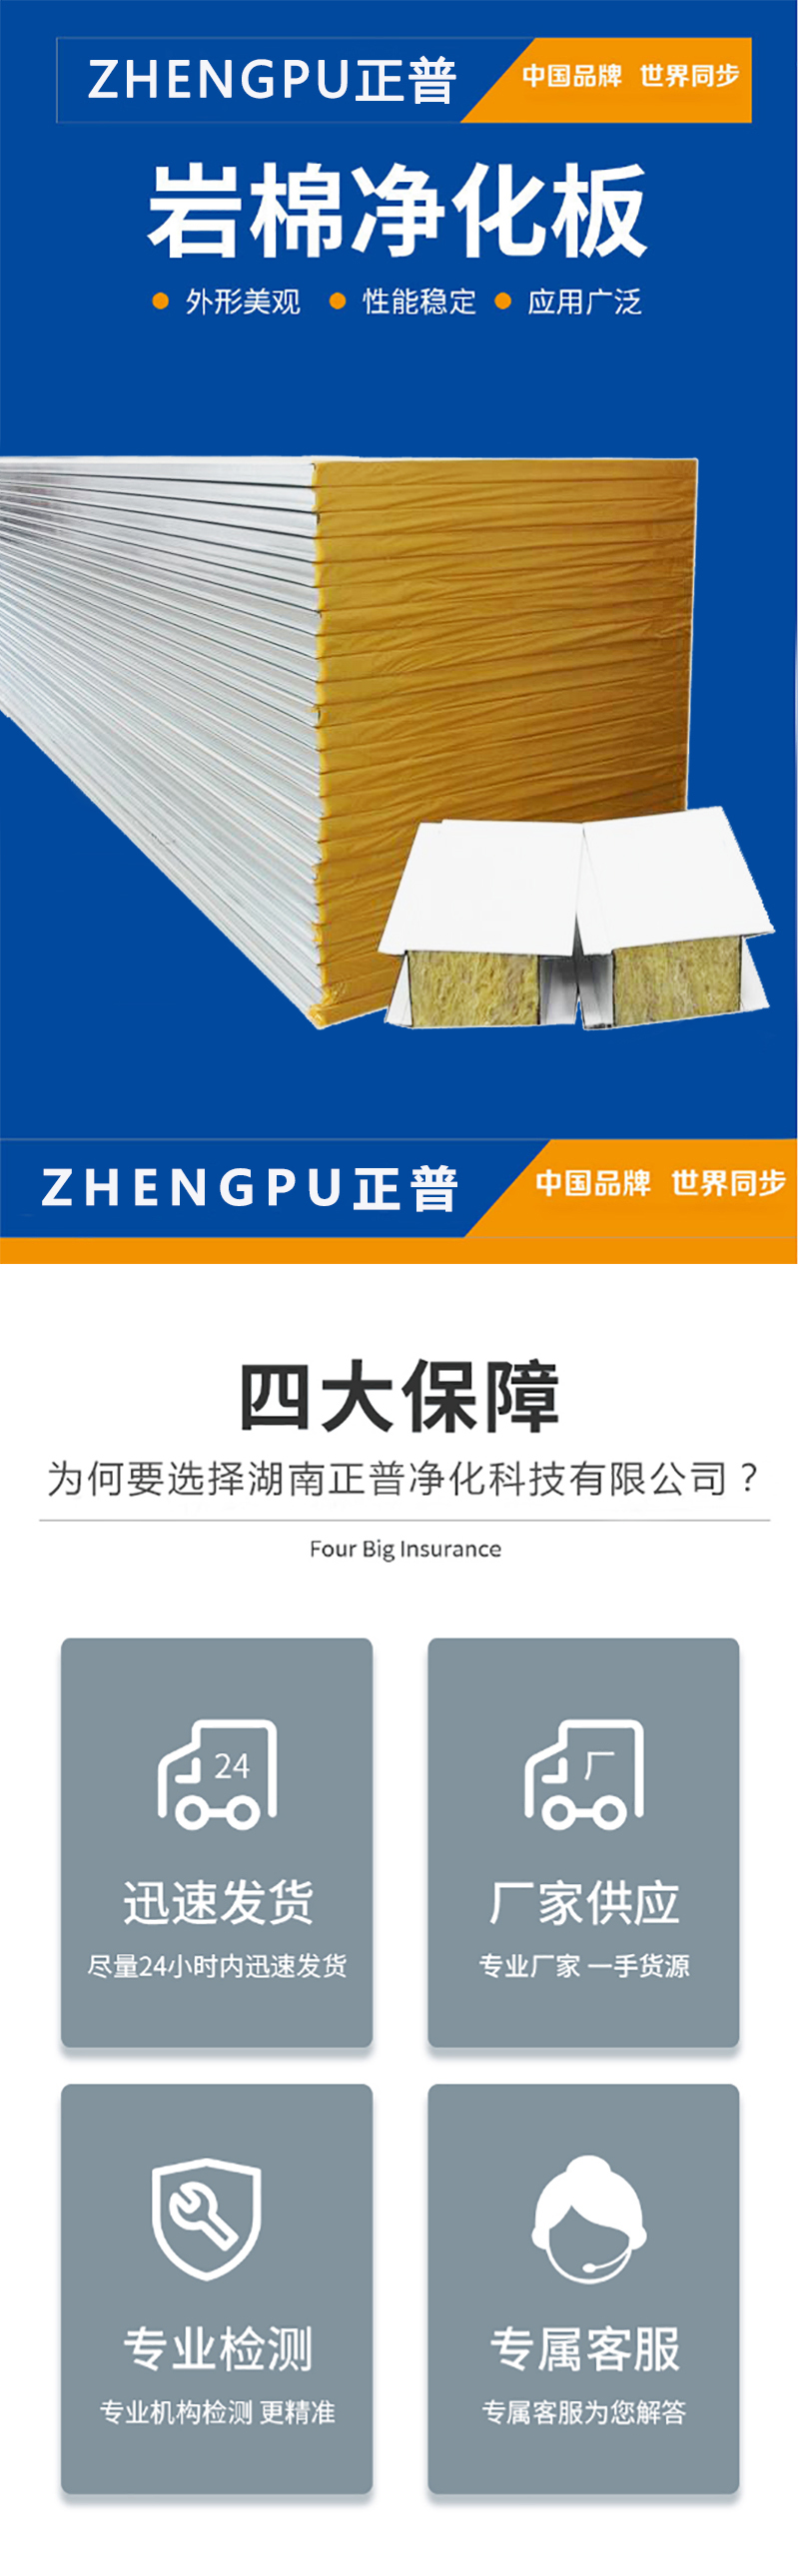 火博官方|中国有限公司官网,湘潭彩钢夹芯板销售,湘潭彩钢板销售